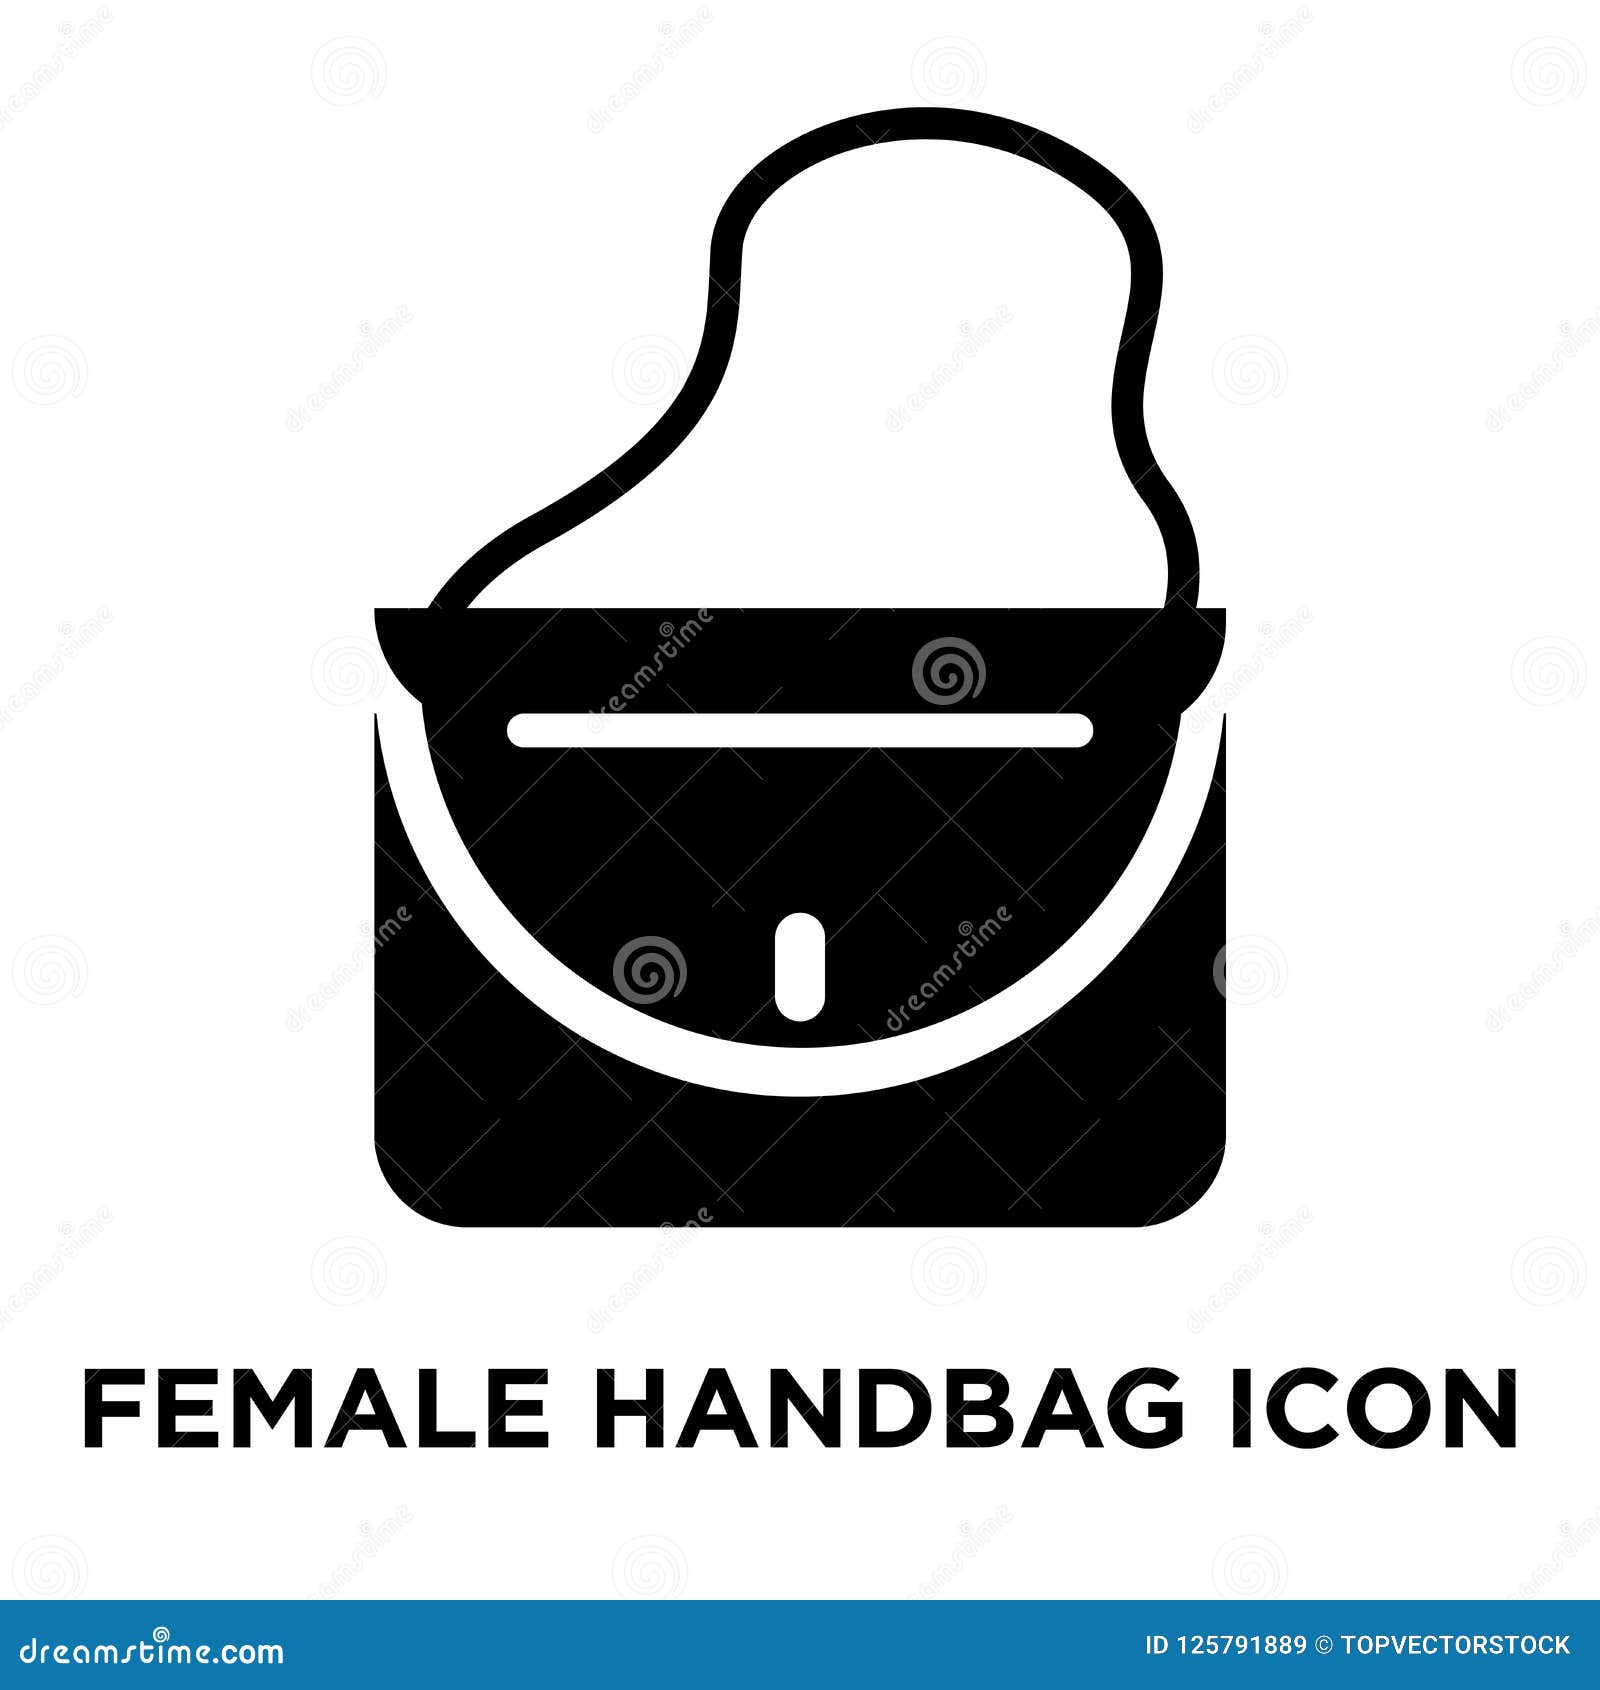 female handbag iconÃÂ    on white background, logo